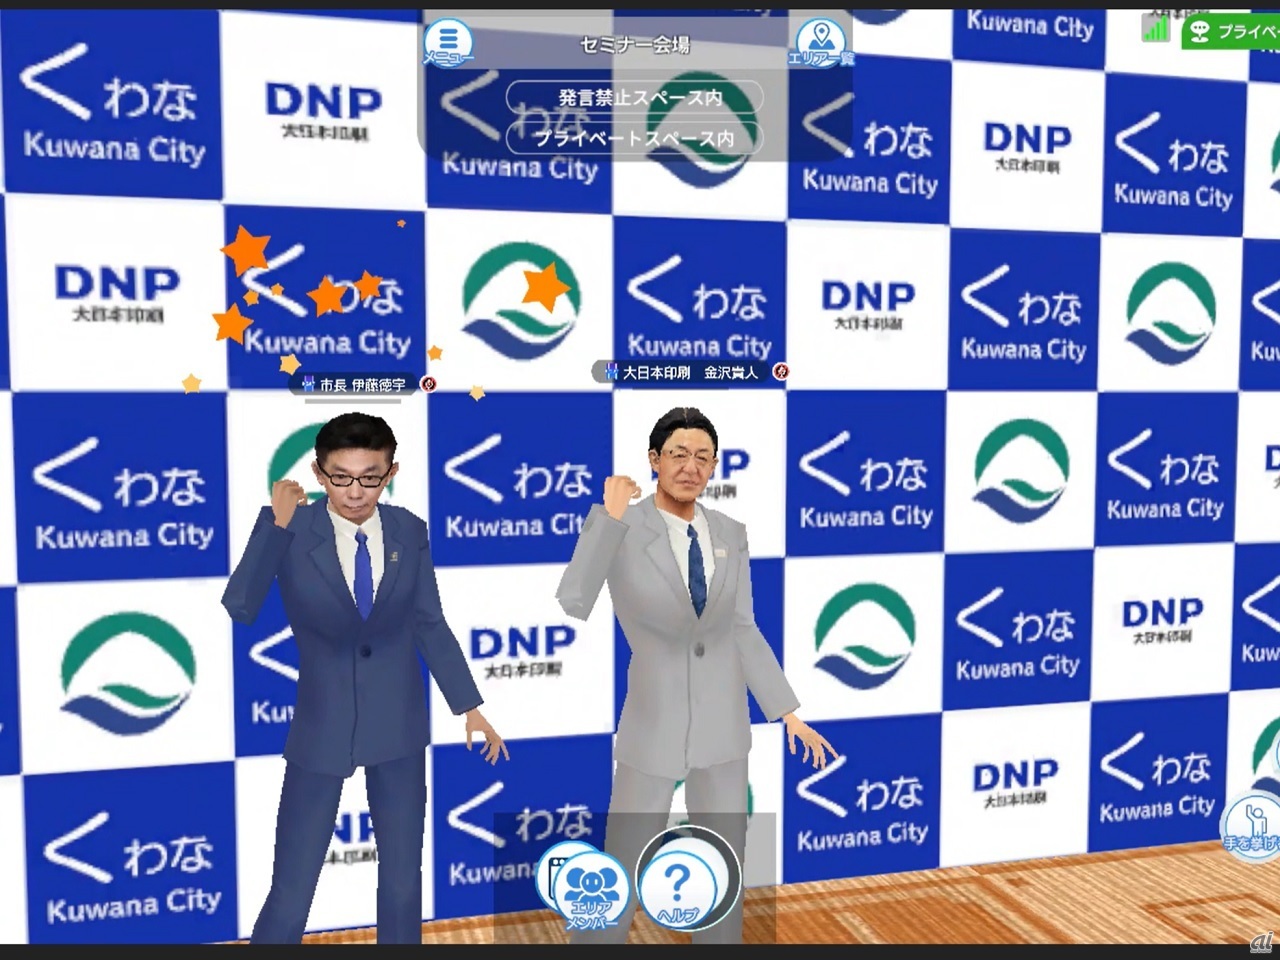 （左から）三重県桑名市 市長 伊藤徳宇氏、DNP 常務執行役員 金沢貴人氏のアバター